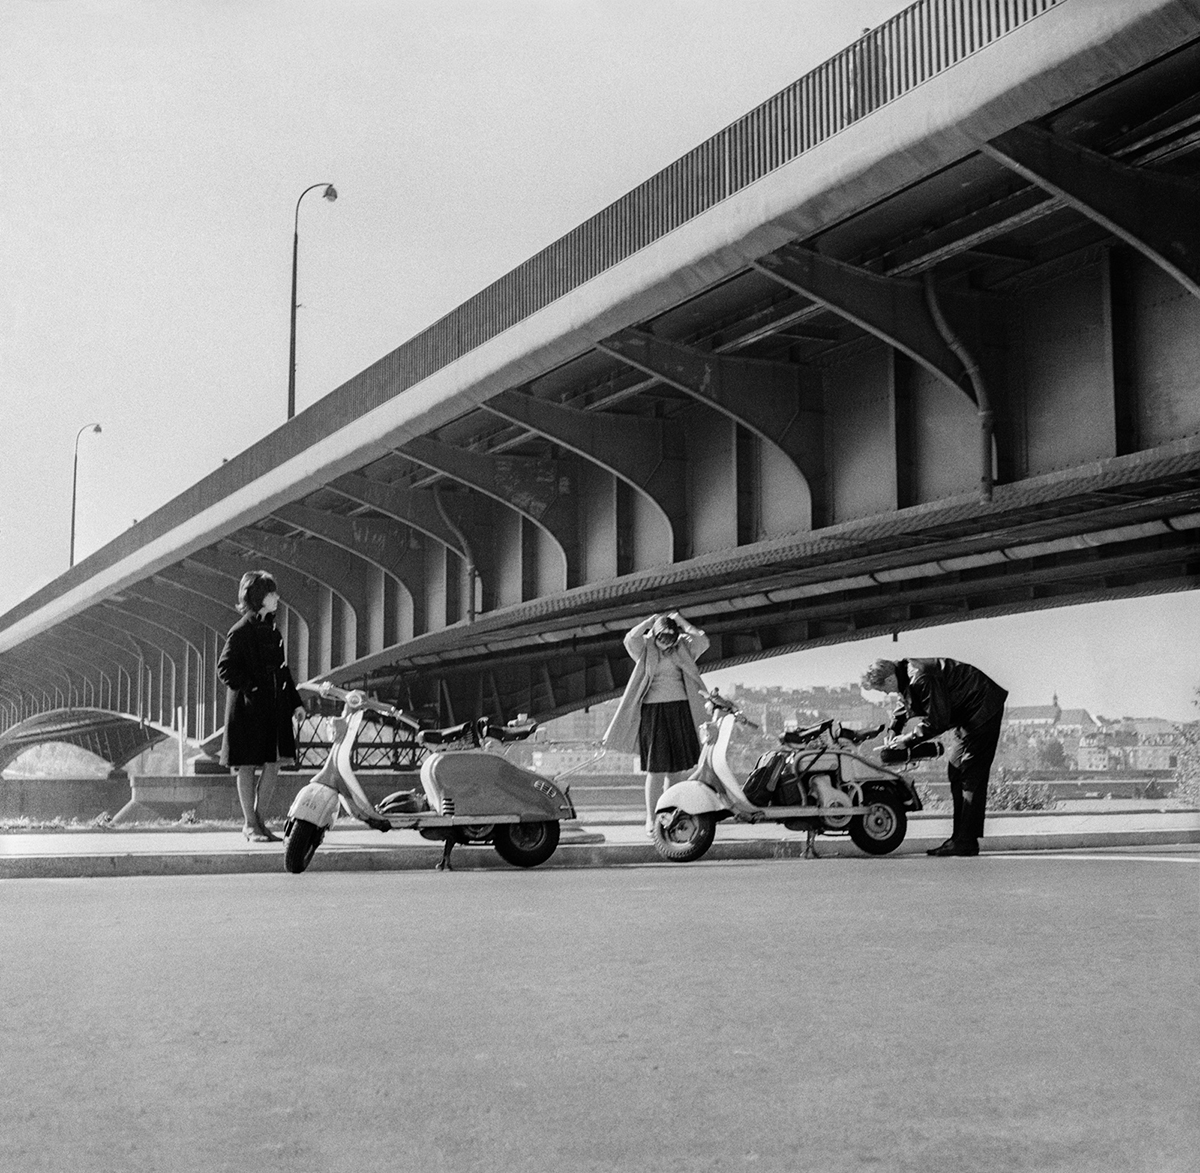 Przejażdżka skuterami nad Wisłą pod Mostem Śląsko-Dąbrowskim, 1960. Fot. Tadeusz Rolke/Agencja Gazeta